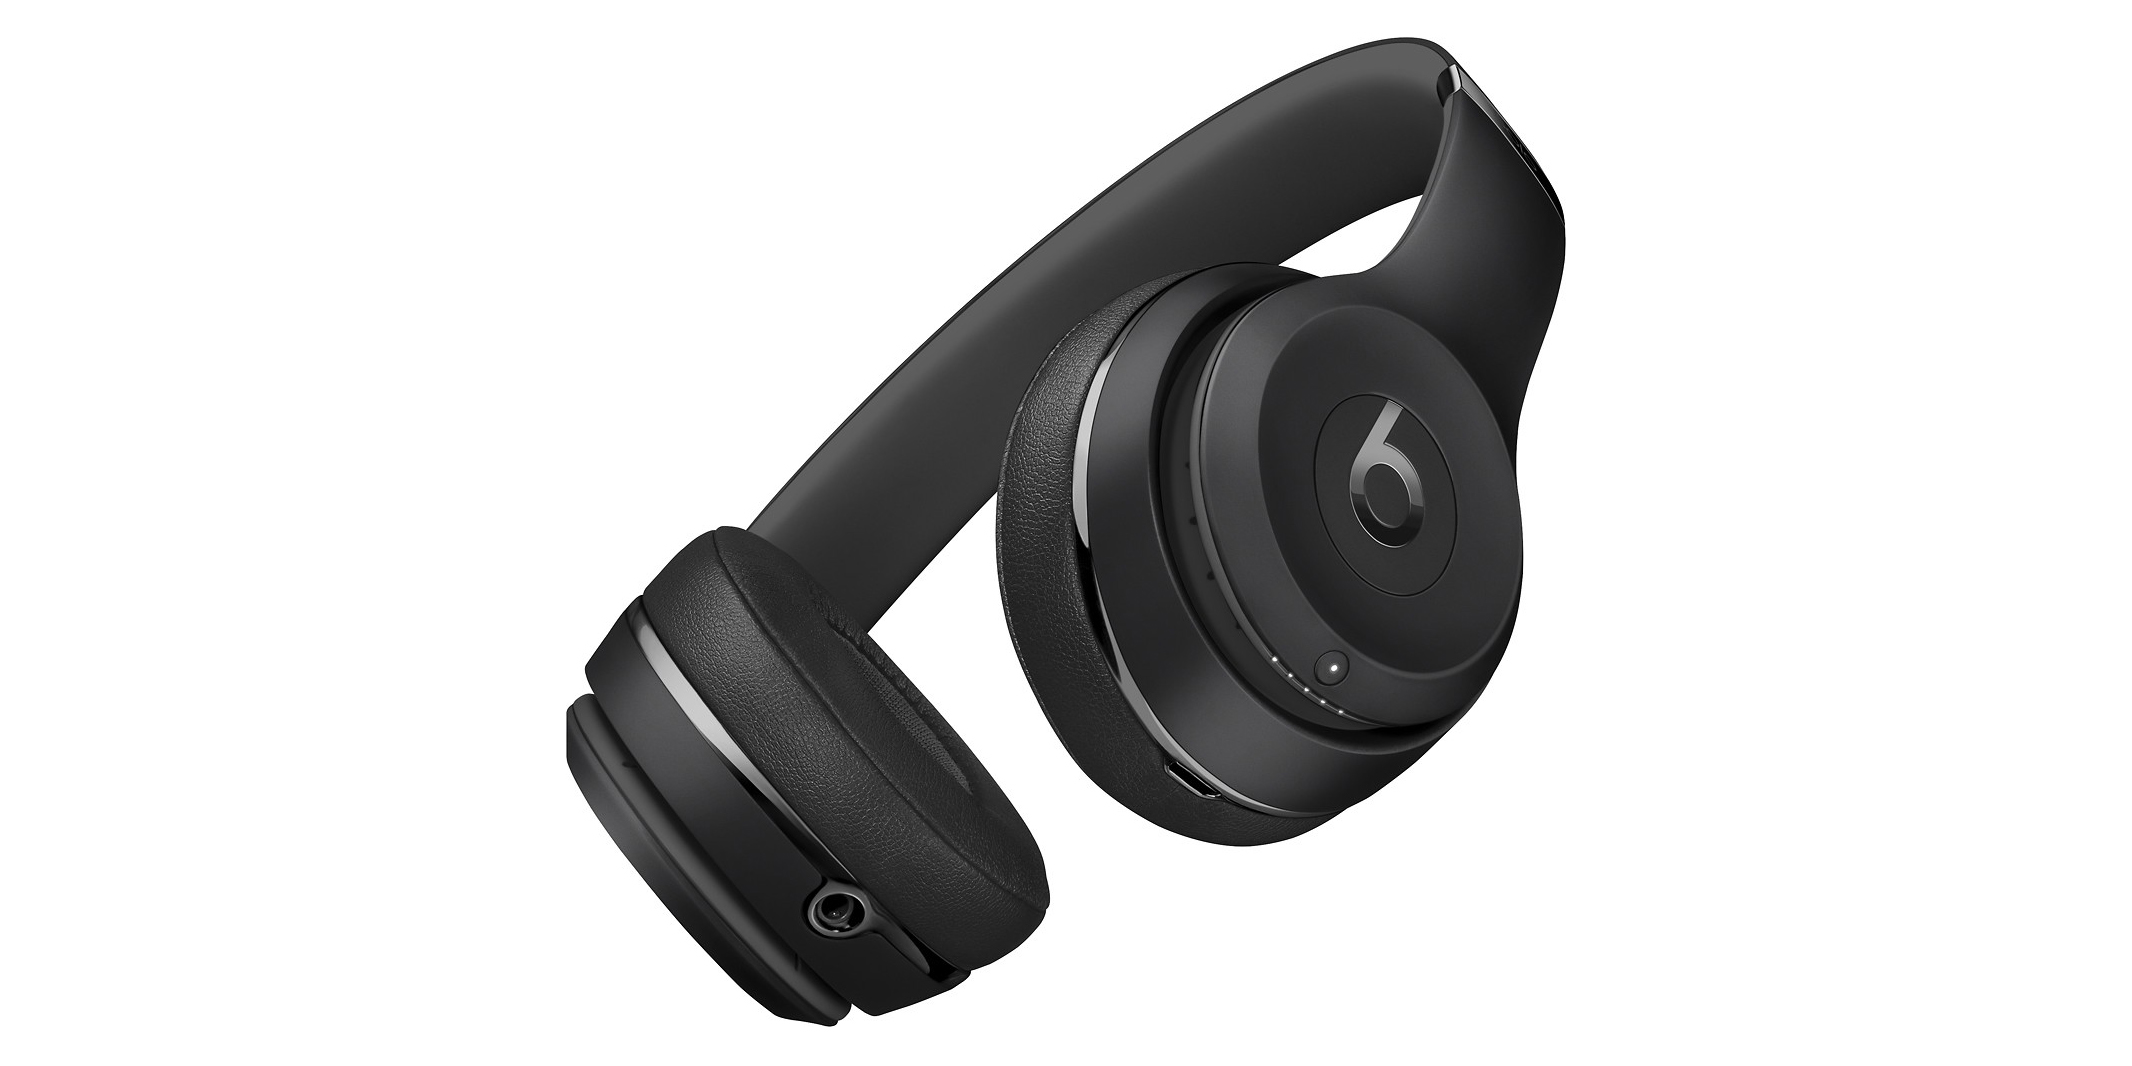 Beats Solo3 Wireless Headphones are 